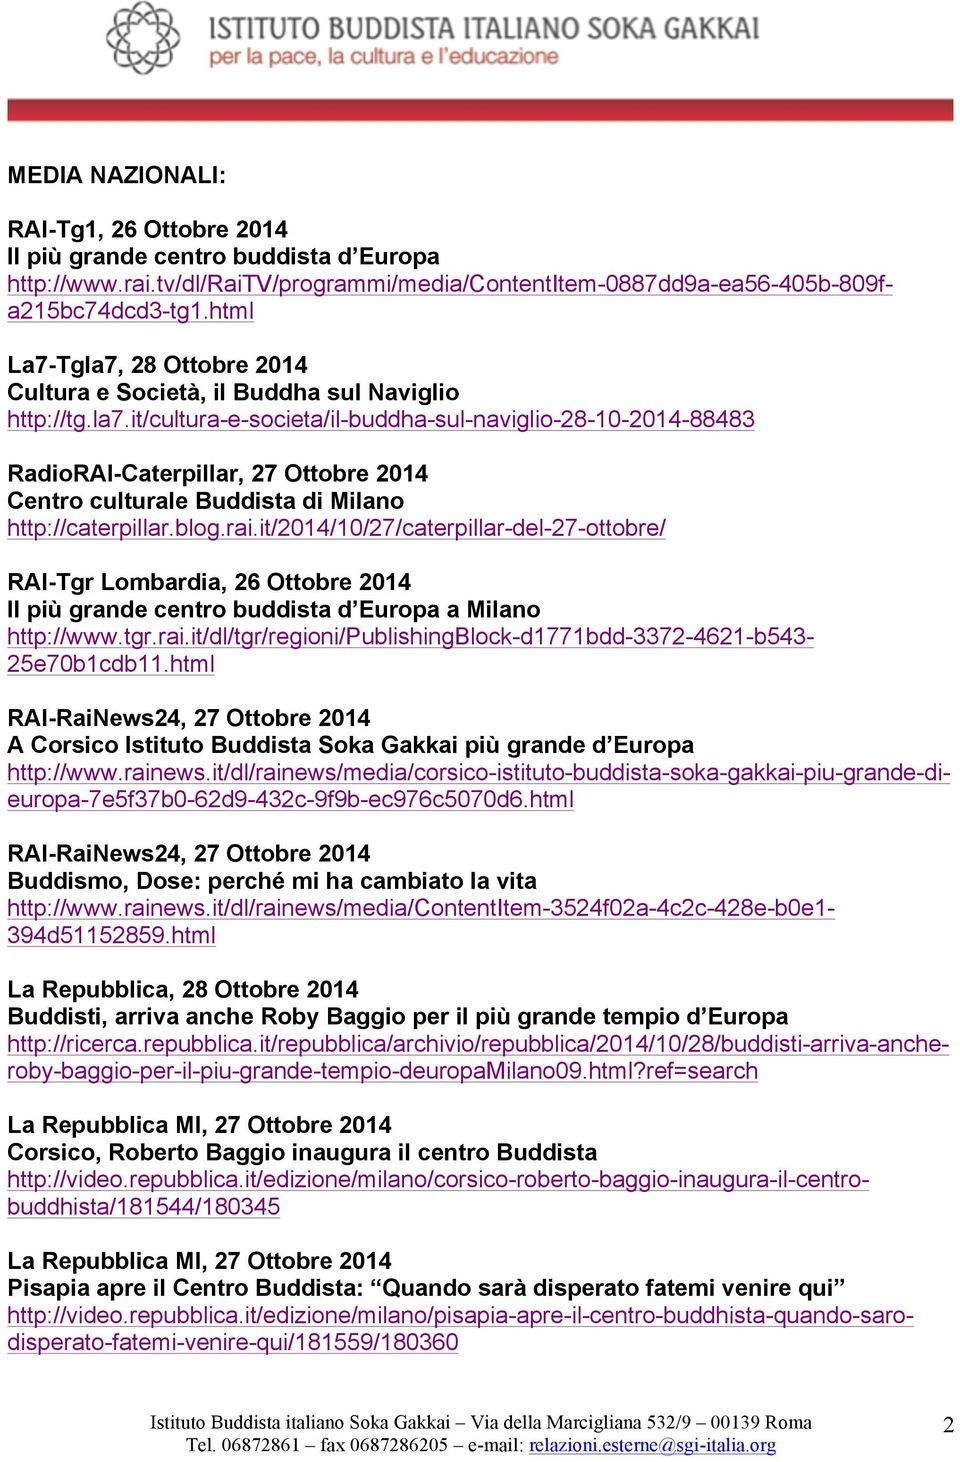 blog.rai.it/2014/10/27/caterpillar-del-27-ottobre/ RAI-Tgr Lombardia, 26 Ottobre 2014 Il più grande centro buddista d Europa a Milano http://www.tgr.rai.it/dl/tgr/regioni/publishingblock-d1771bdd-3372-4621-b543-25e70b1cdb11.